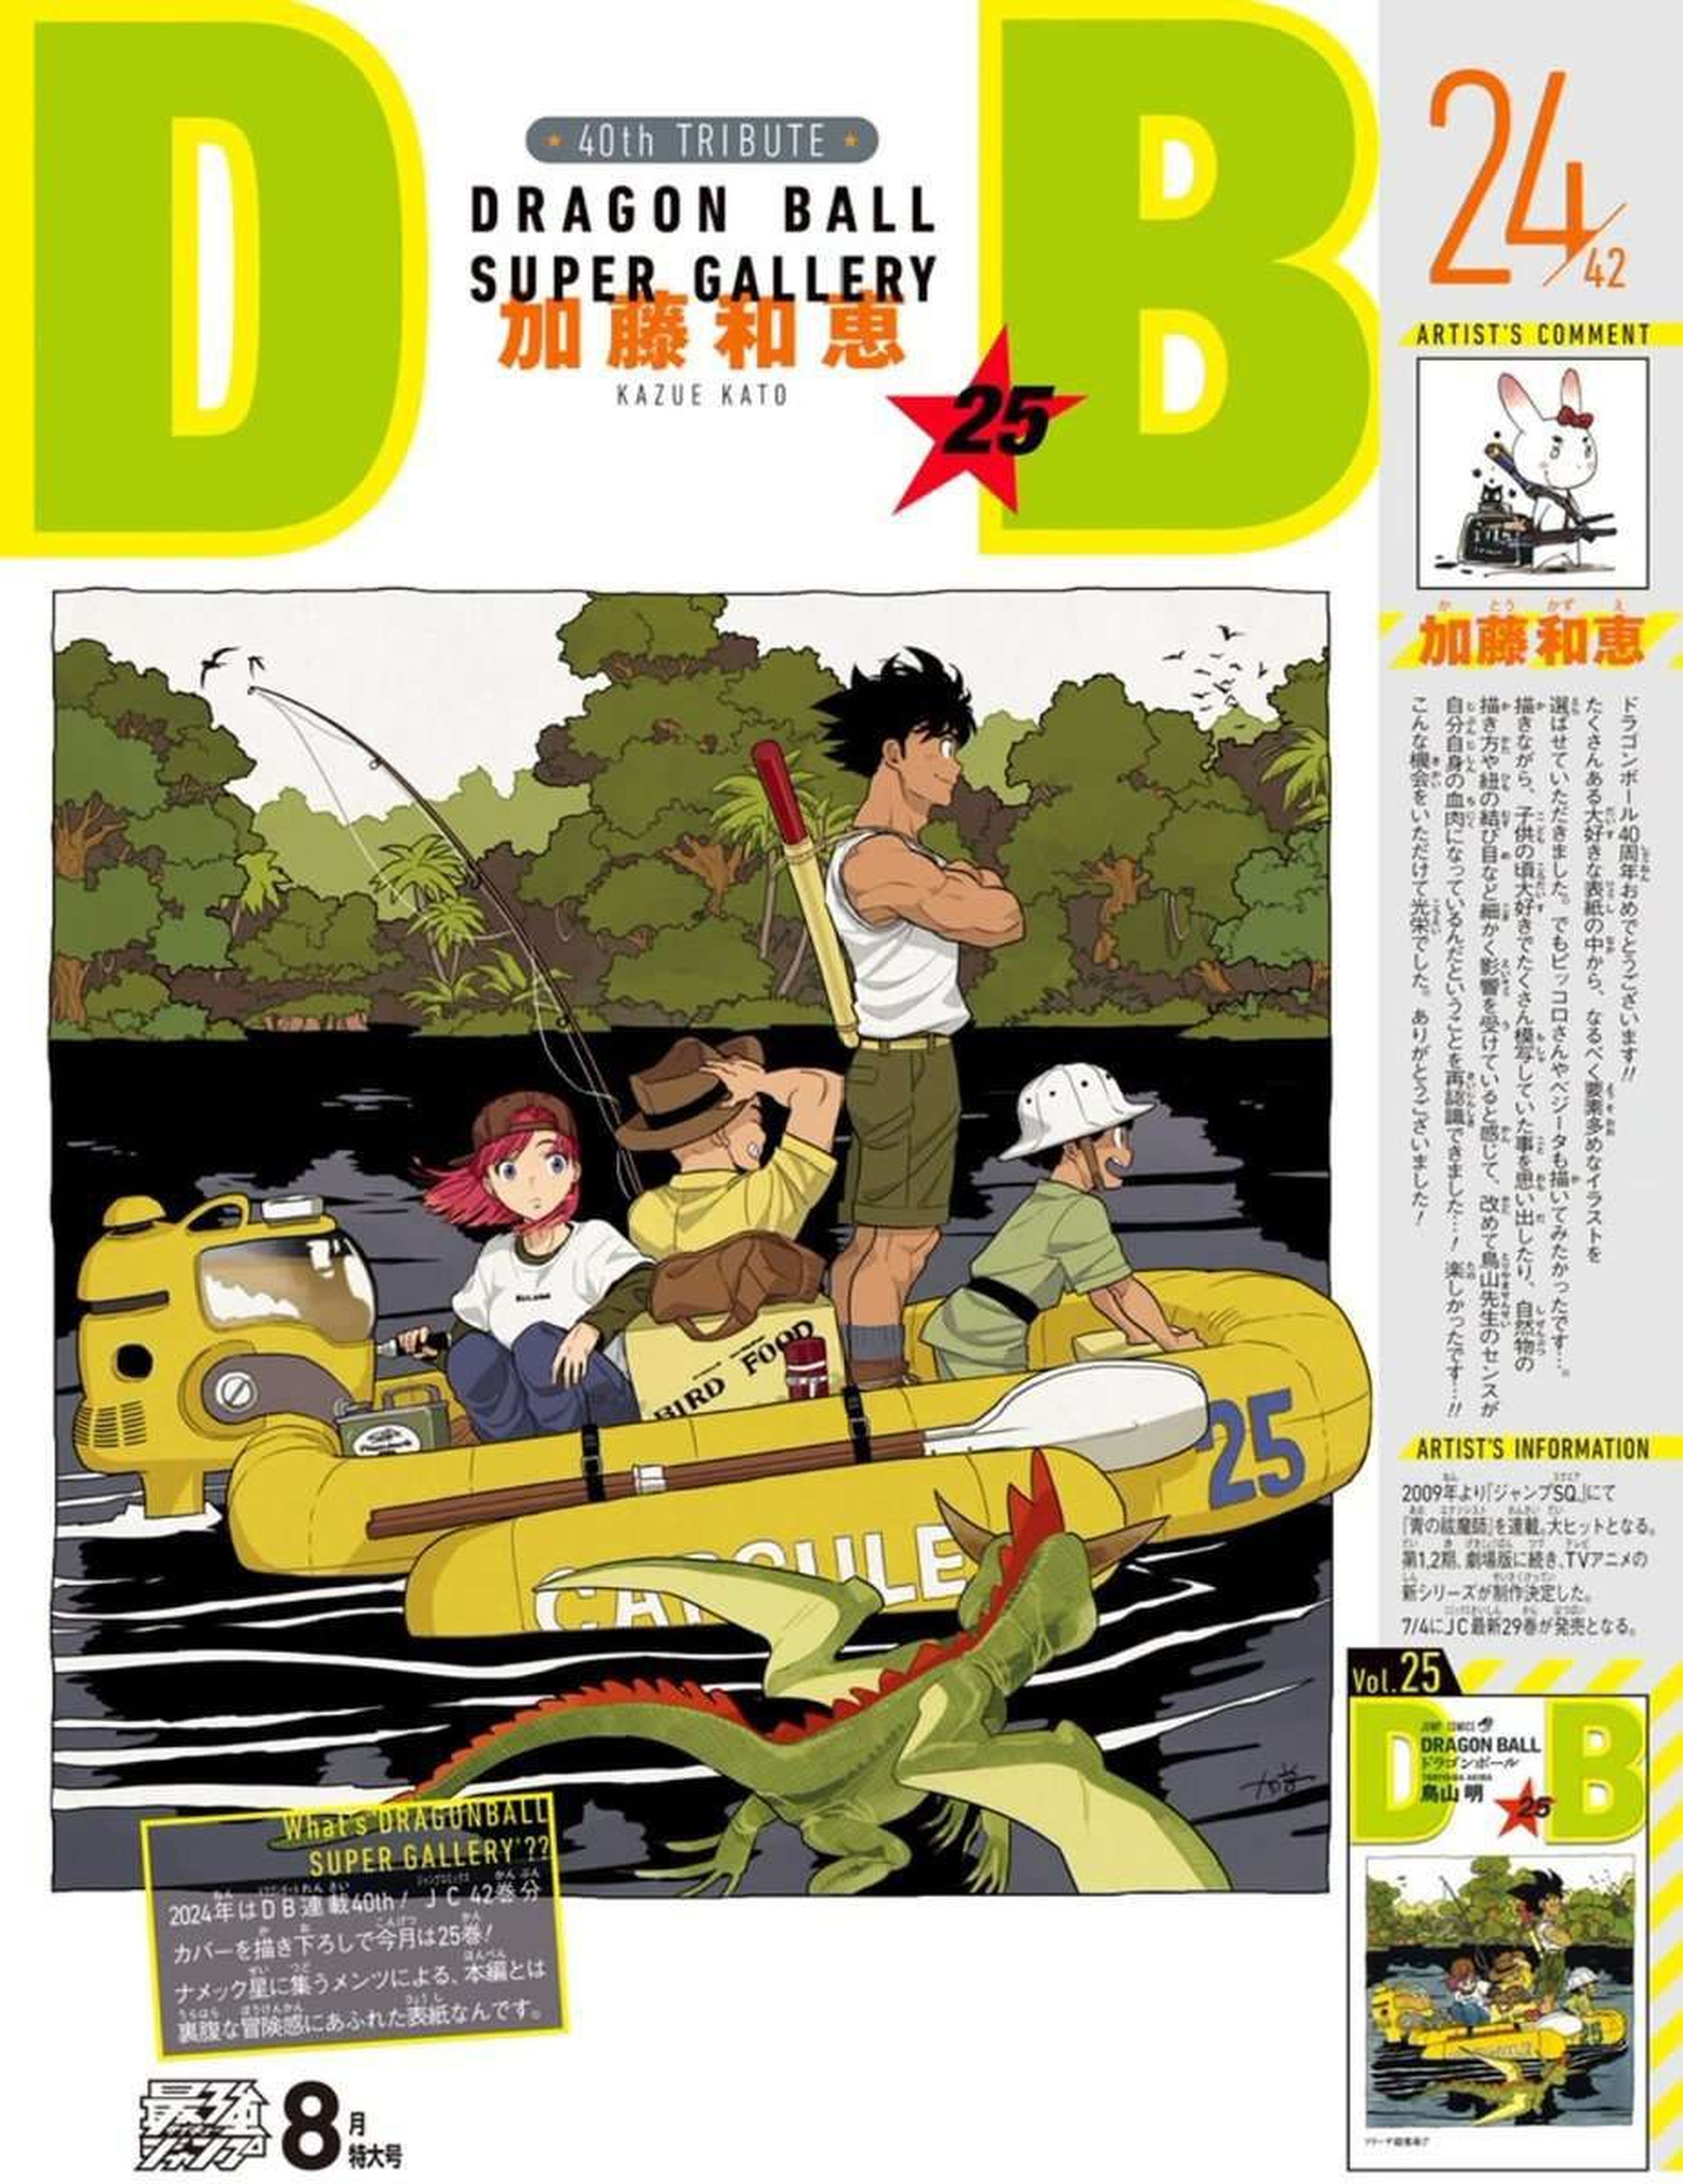 Dragon Ball -  Kazue Kato, autora de Blue Exorcist, recrea fielmente una de las portadas originales de la serie manga de Akira Toriyama